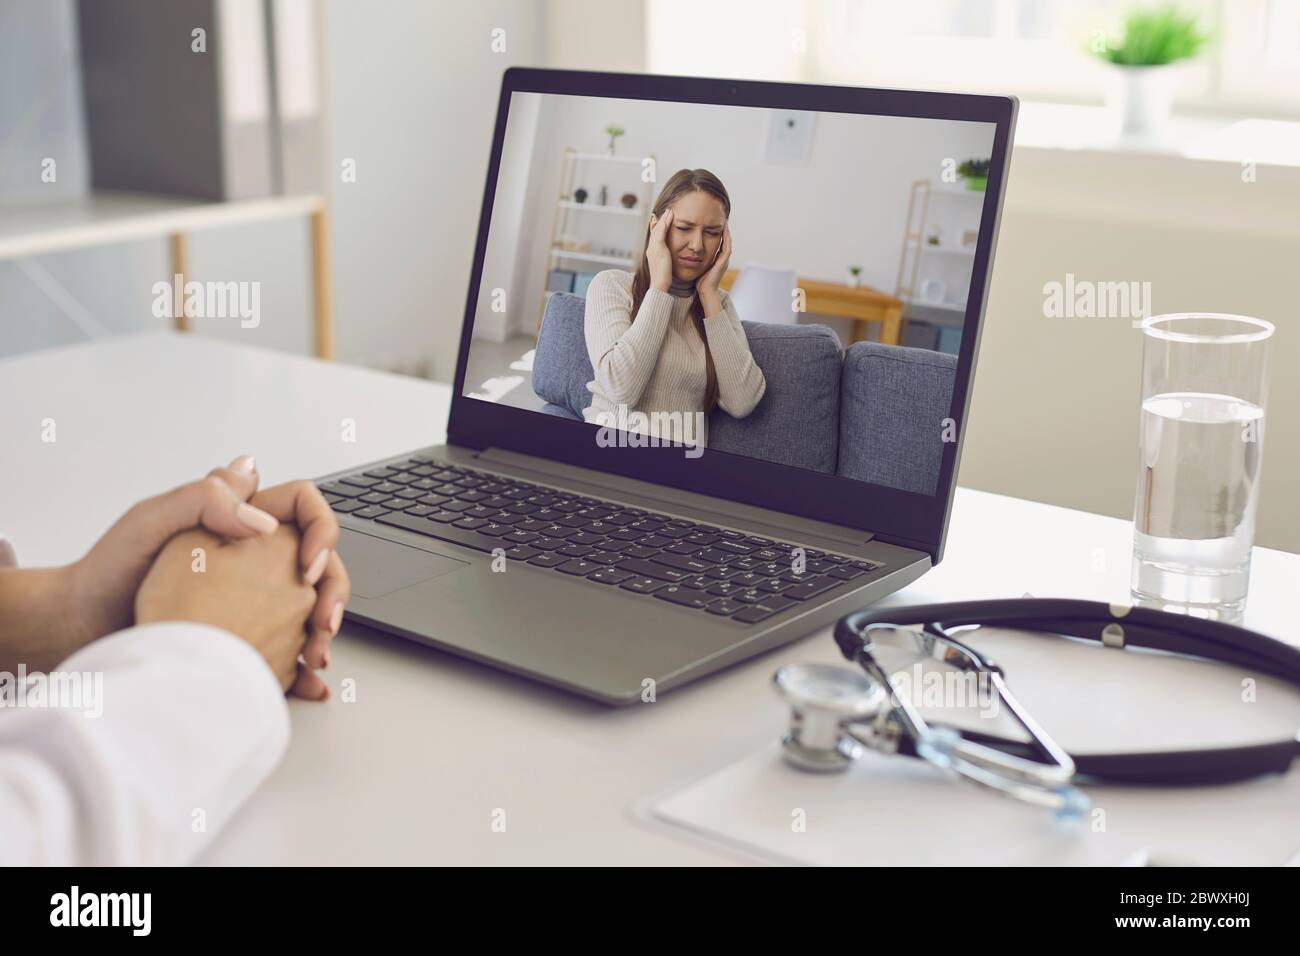 Médecin et patient en ligne. Le médecin a un ordinateur portable de consultation chat vidéo à l'écoute d'un patient avec un mal de tête dans le bureau de l'hôpital. Banque D'Images